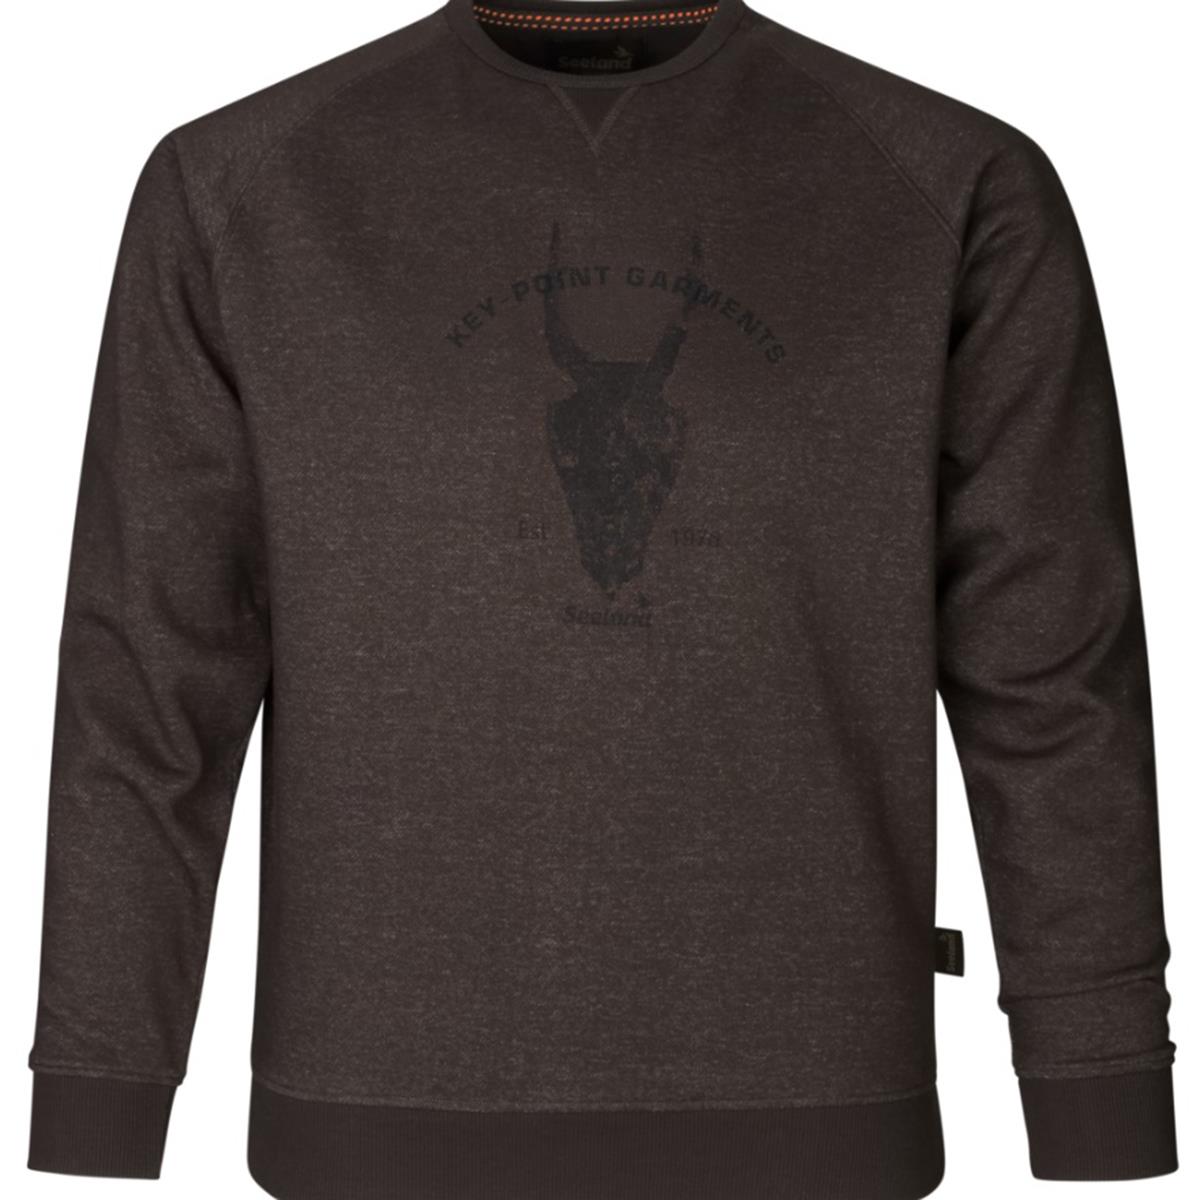 Свитер Key-Point Sweatshirt After dark melang SEELAND triol свитер помпончики m темно серый